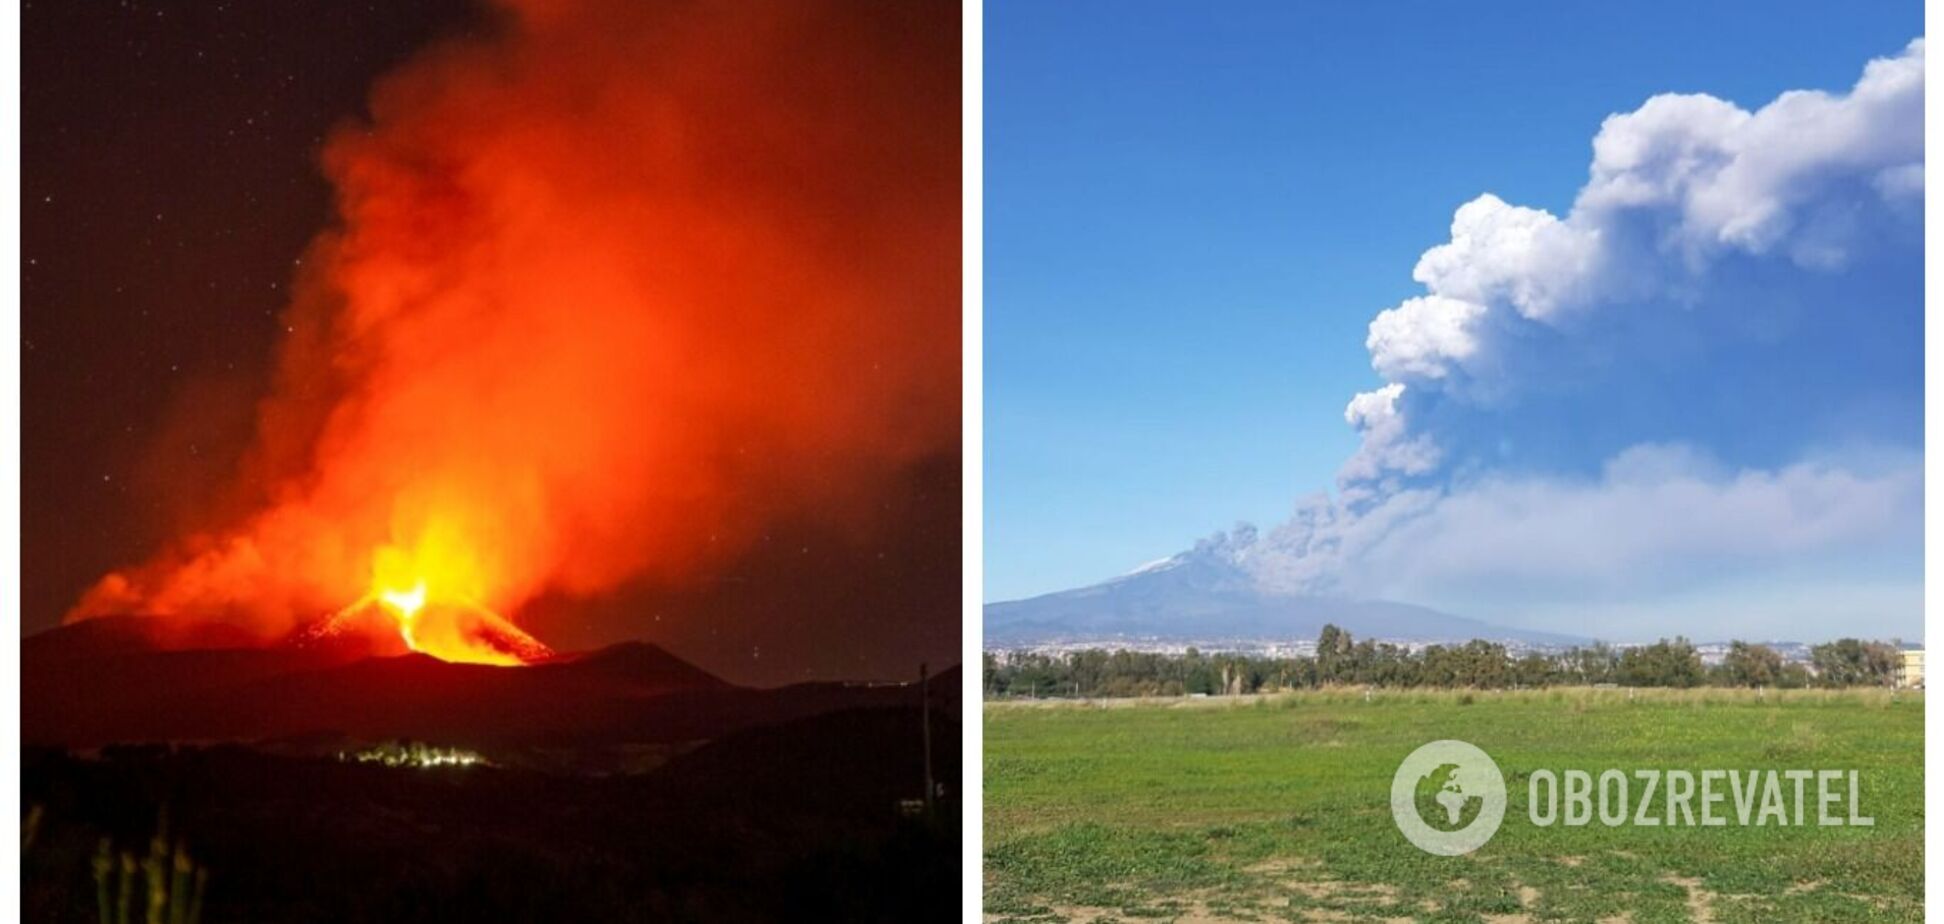 Впечатляющее зрелище: извержение вулкана Этна сняли на видео, улицы засыпало пеплом, останавливал работу аэропорт